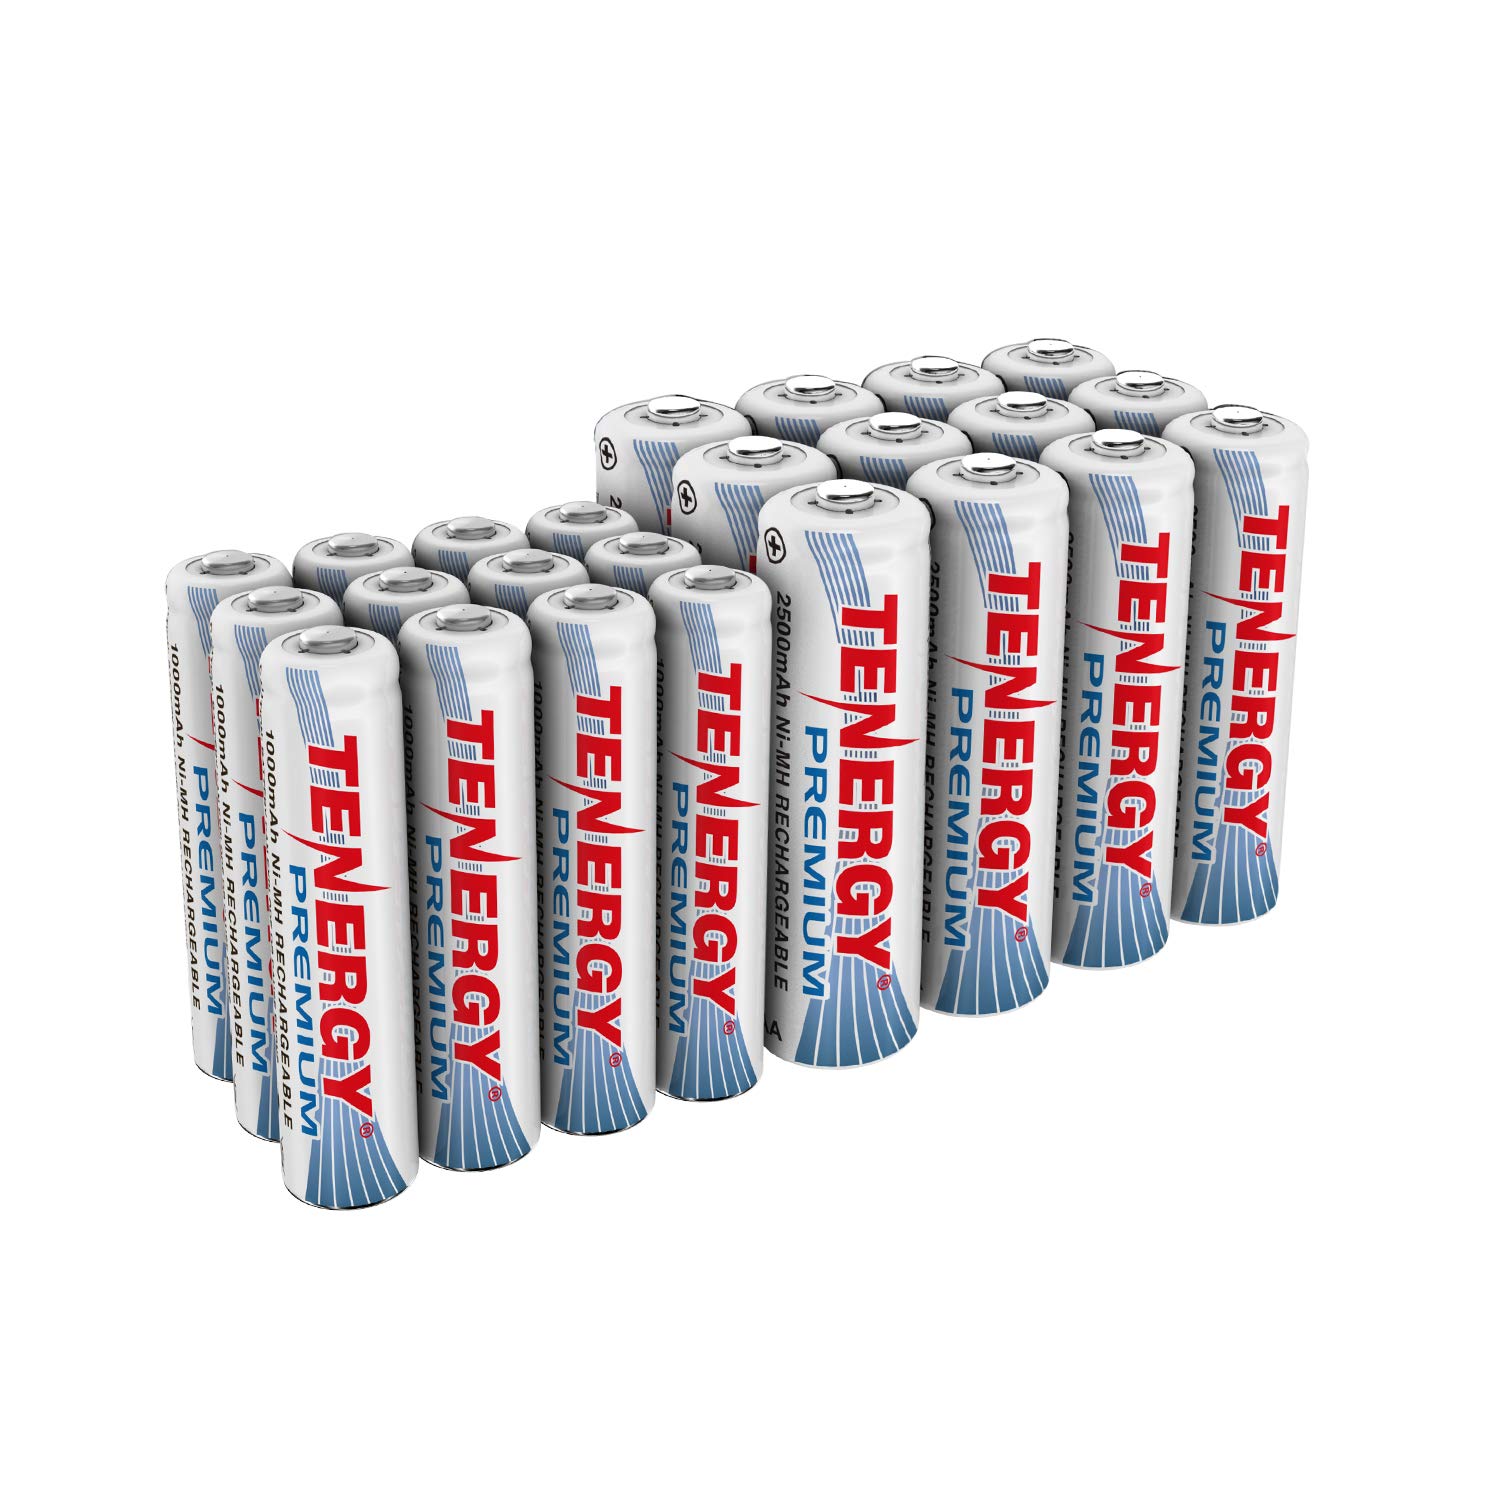 12xAA and 12xAAA Rechargeable Batteries Tenergy Premium